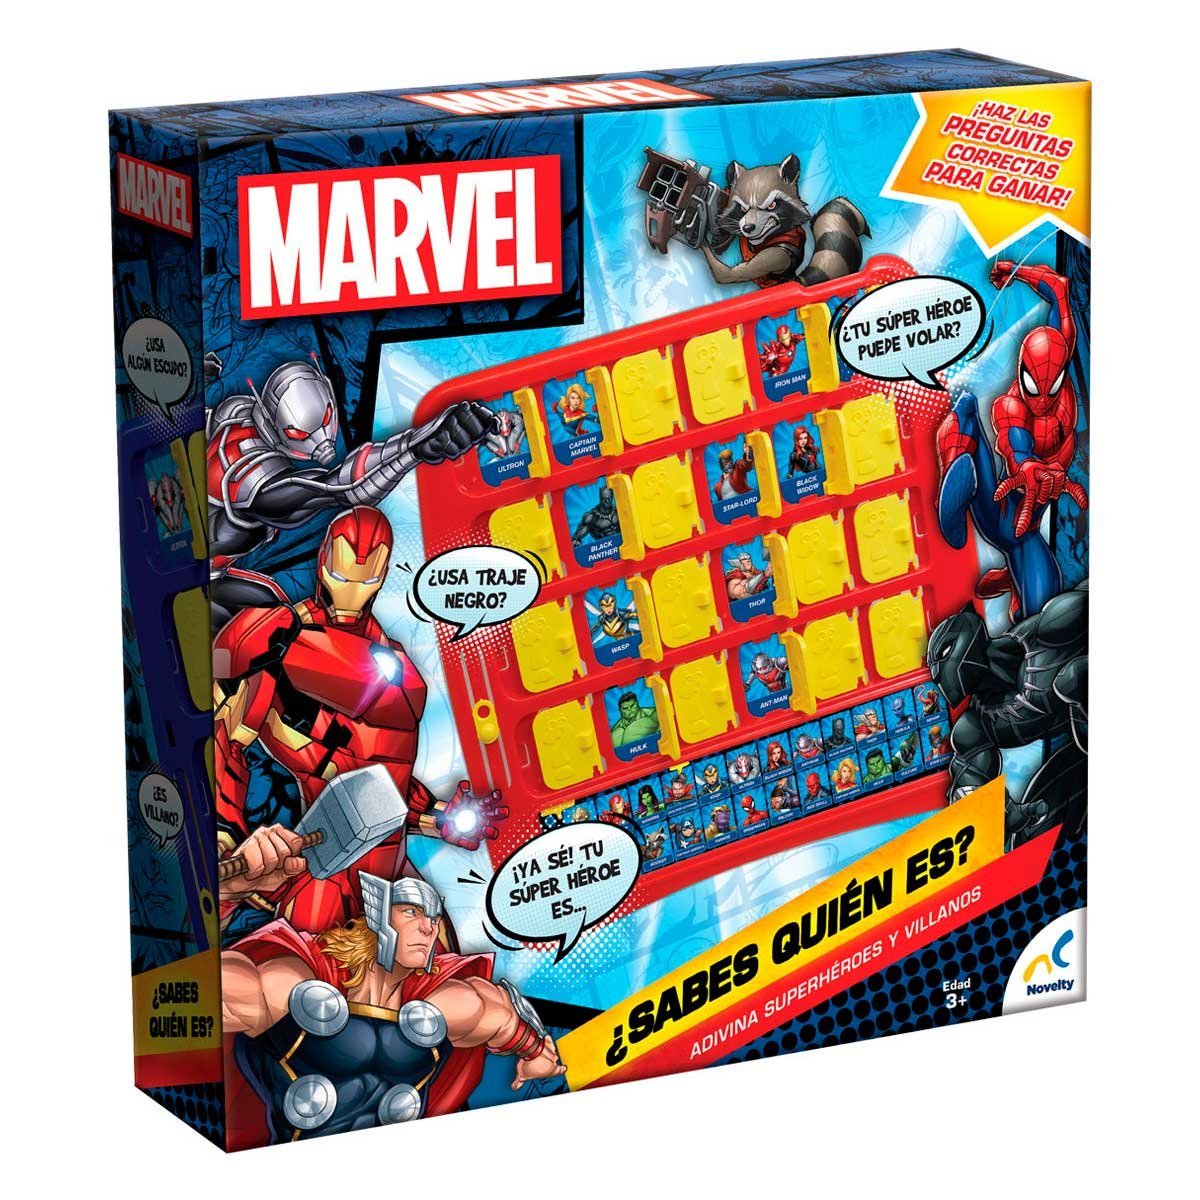 Sabes Quien Es Marvel Novelty Juego De Mesa El signo de instrucción del juego personalizado de 8 x 10 (ver imágenes) 2. claro shop